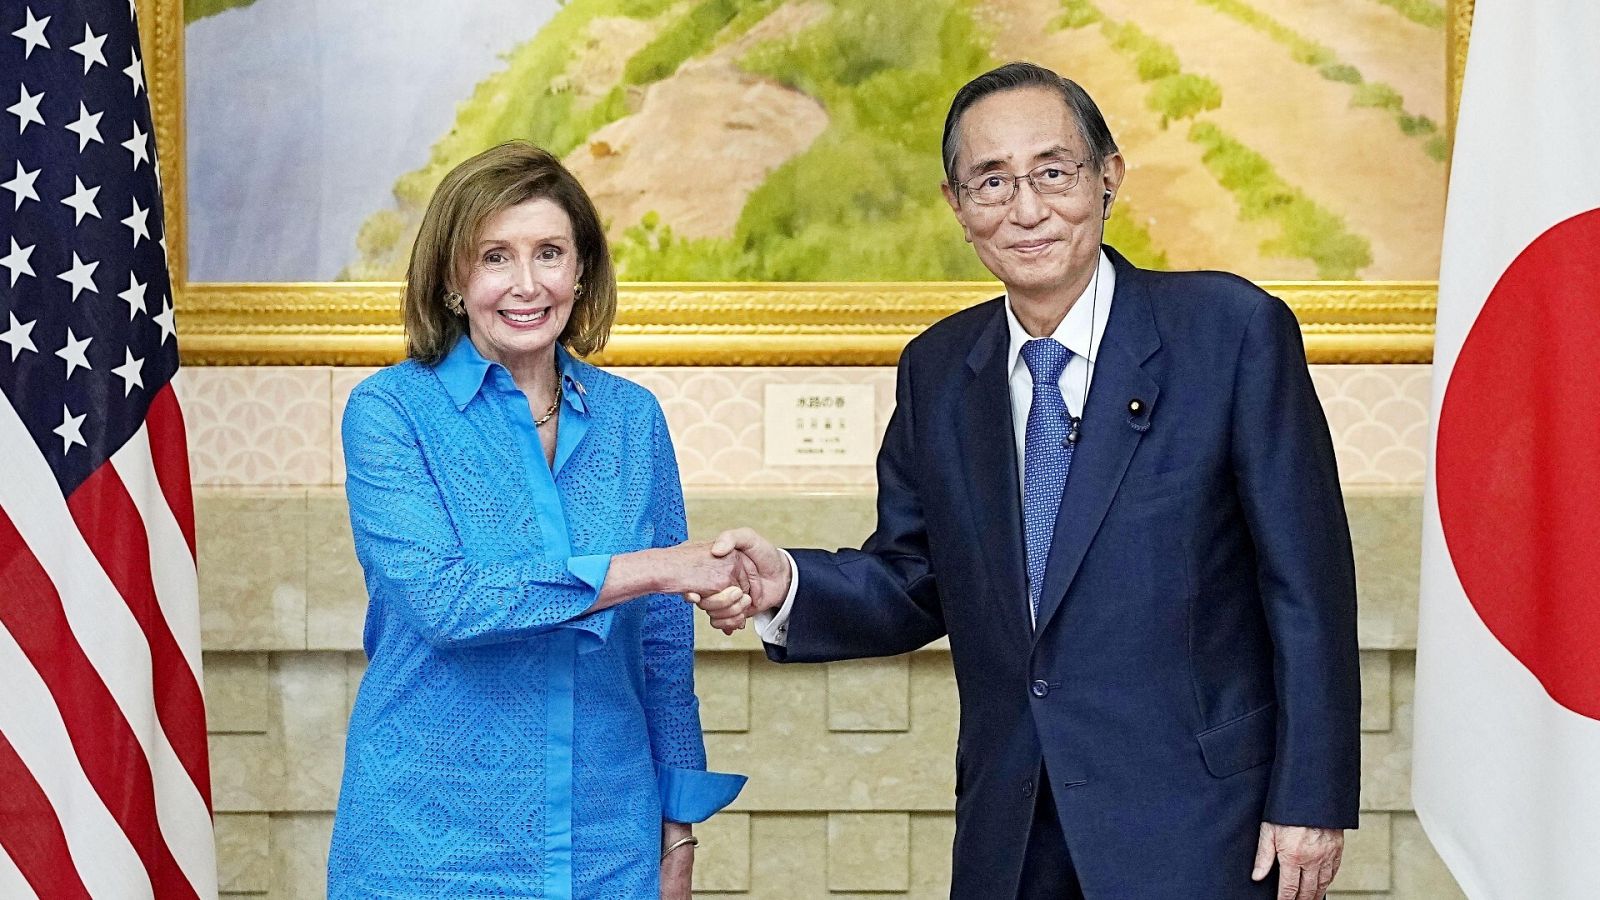 La presidenta de la Cámara de Representantes de EE.UU., Nancy Pelosi, saluda a su homólogo japonés, Hiroyuki Hosoda, a su llegada a Tokio.